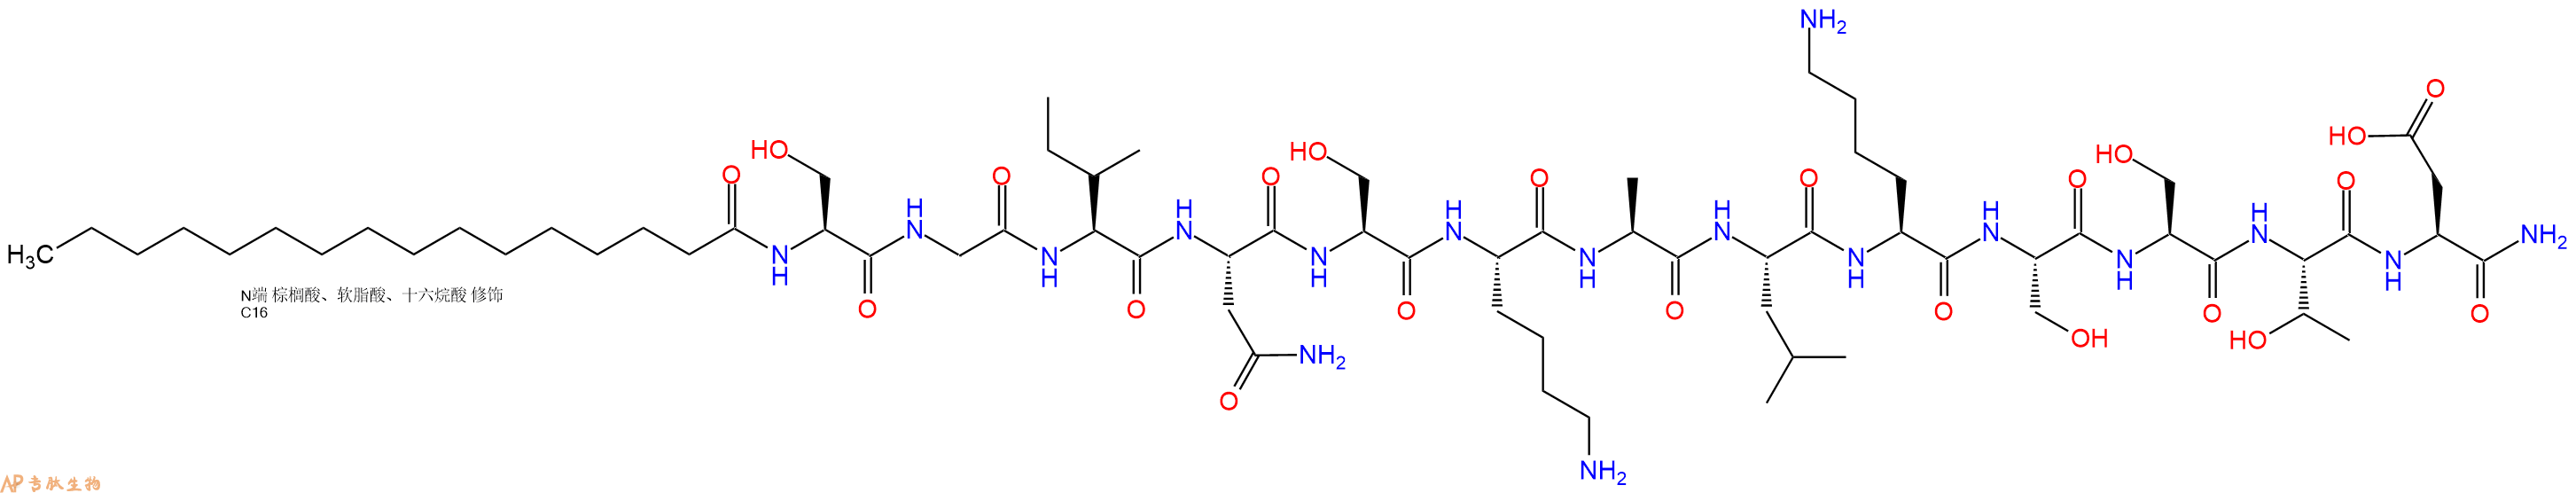 专肽生物产品PAL-Ser-Gly-Ile-Asn-Ser-Lys-Ala-Leu-Lys-Ser-Ser-Th